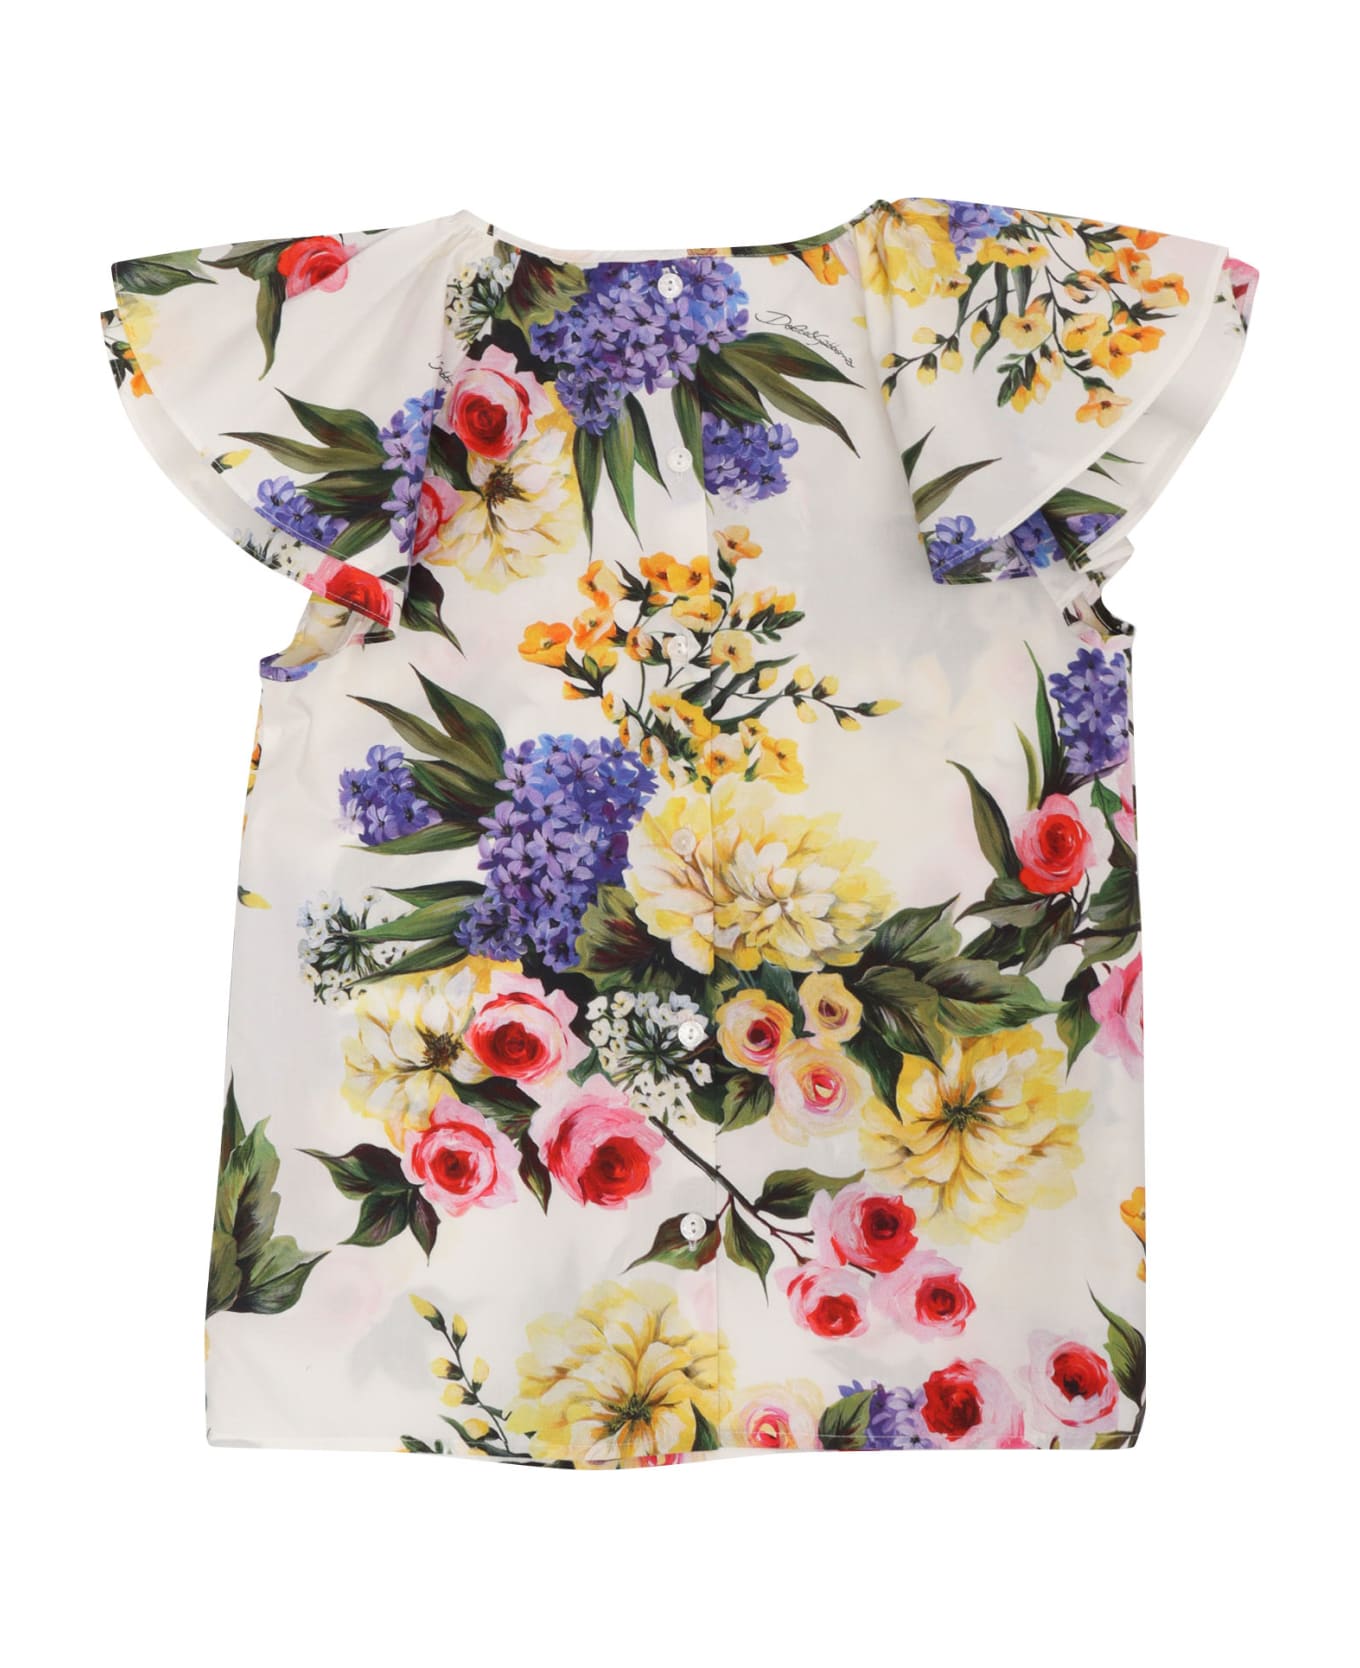 Dolce & Gabbana D&g Floral Print T-shirt - GREEN